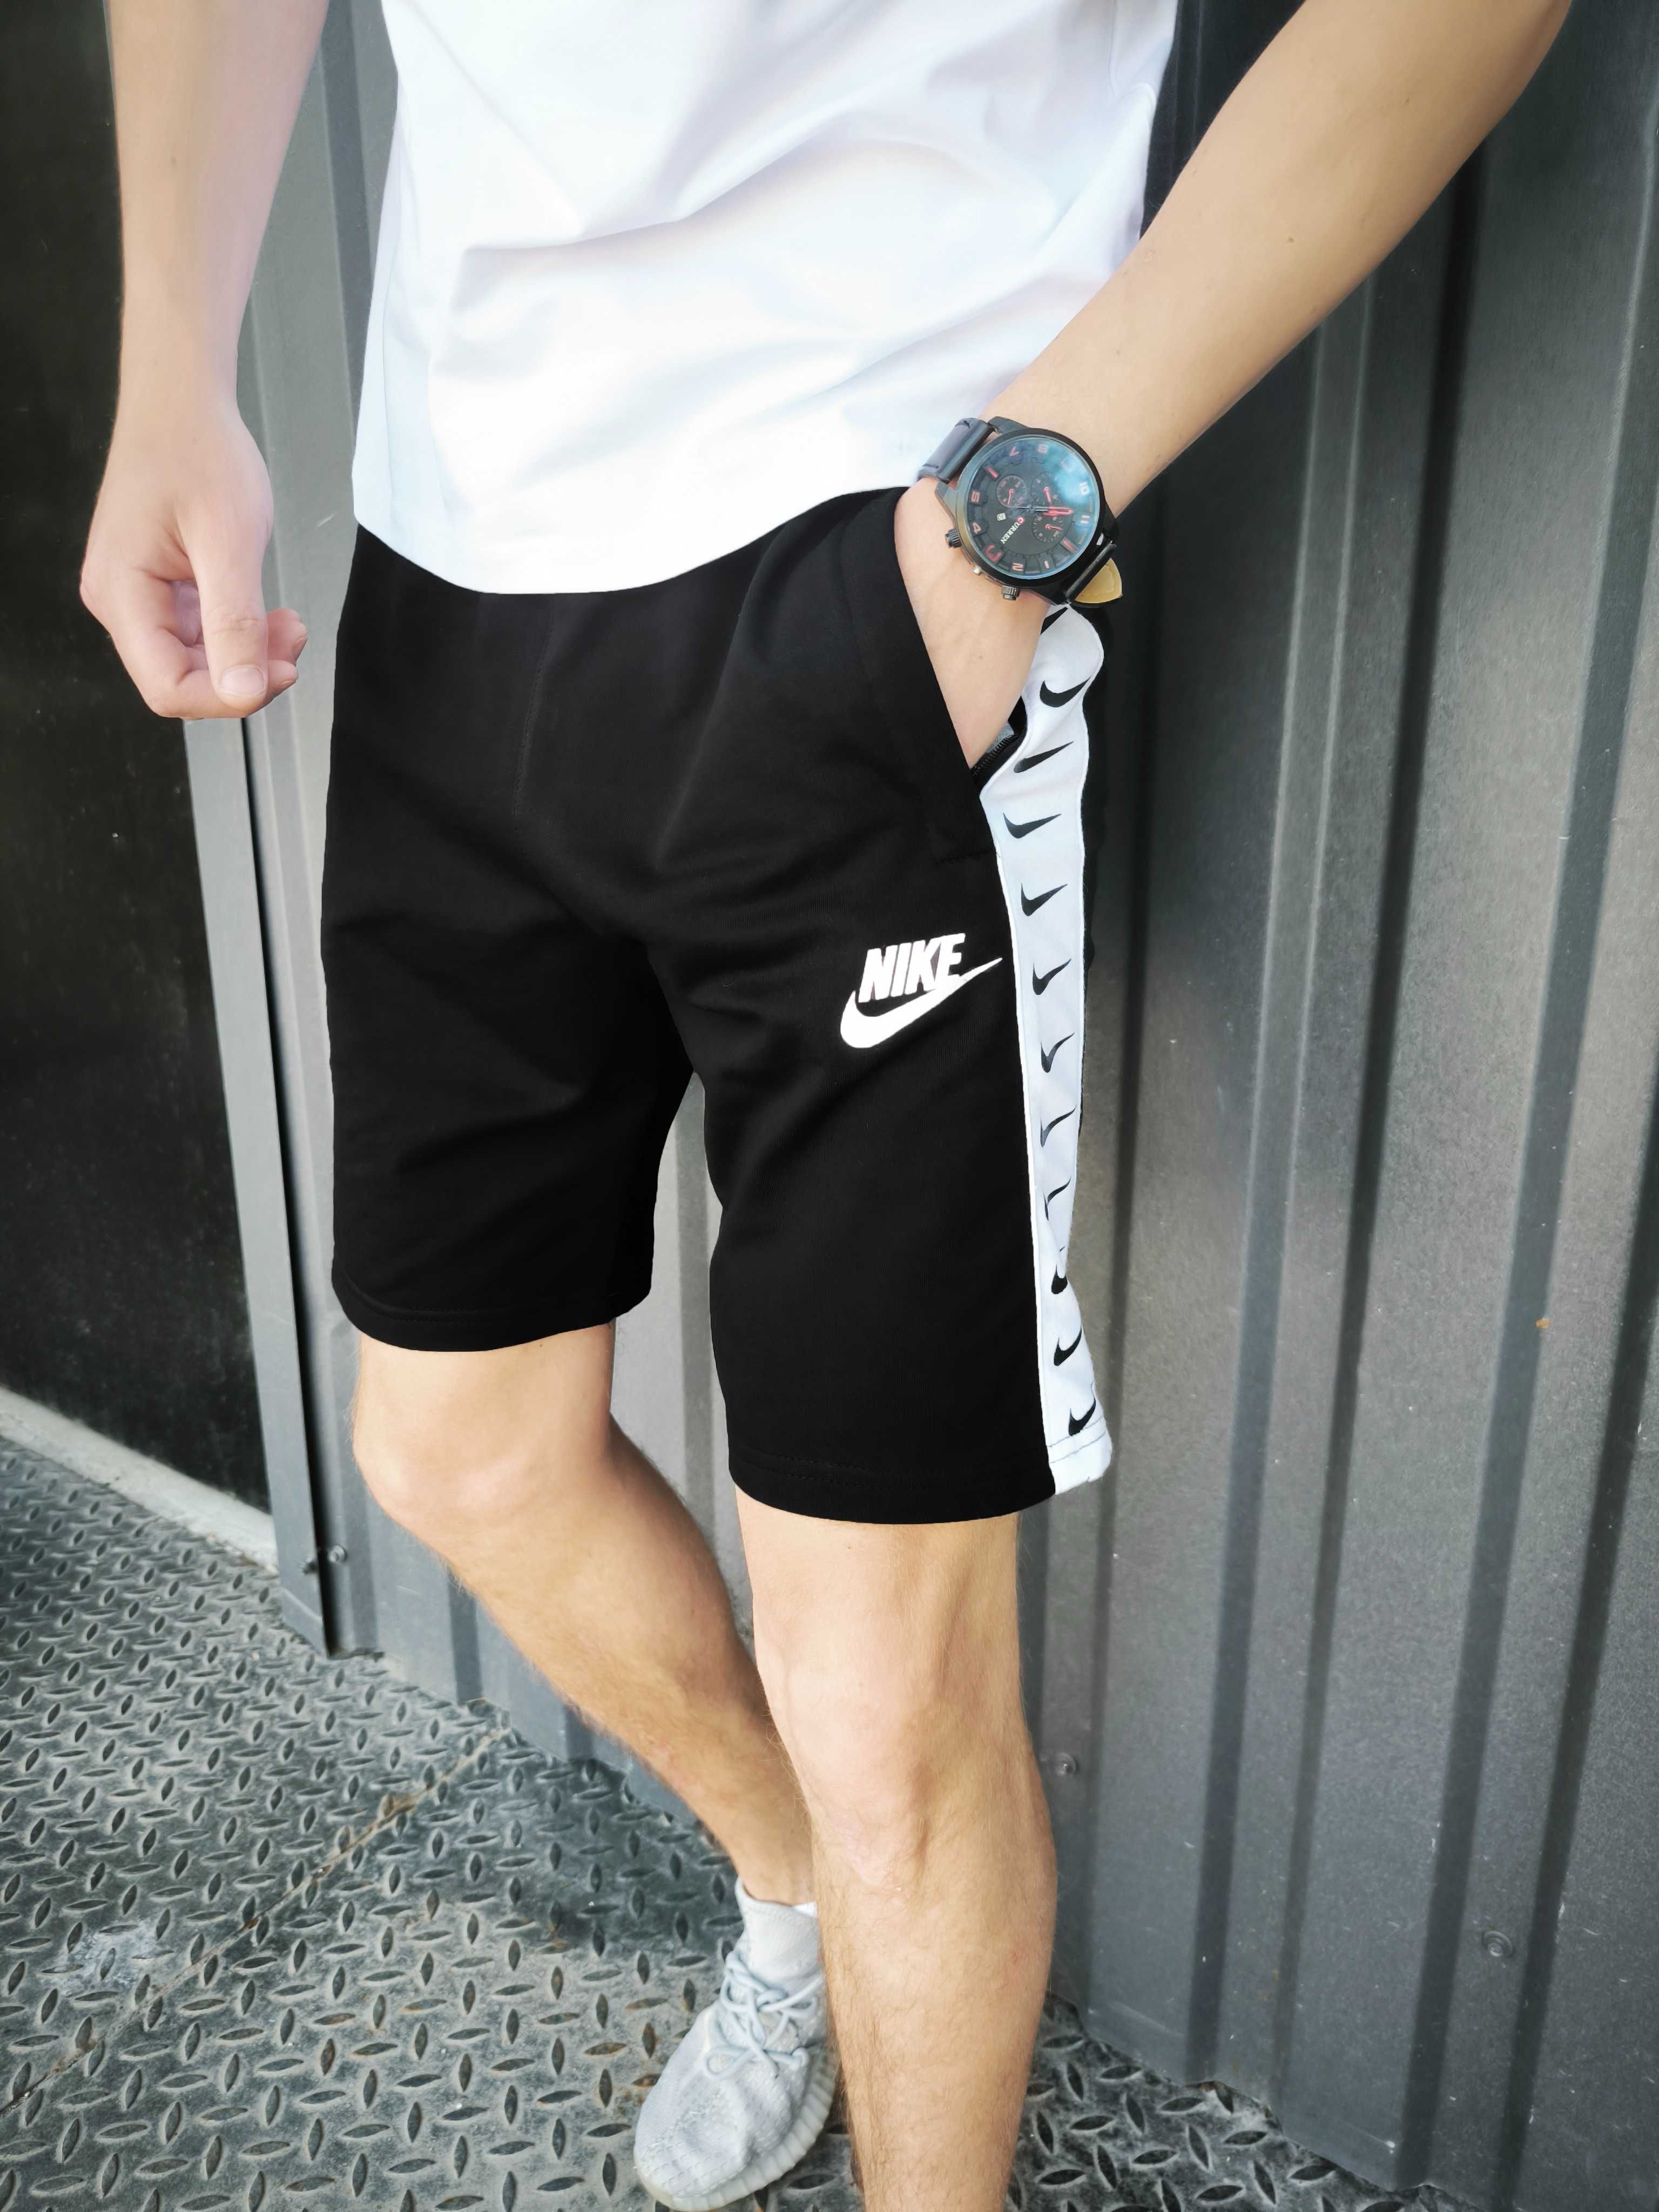 Літній чоловічий комплект Nike футболка + шорти чорний білий